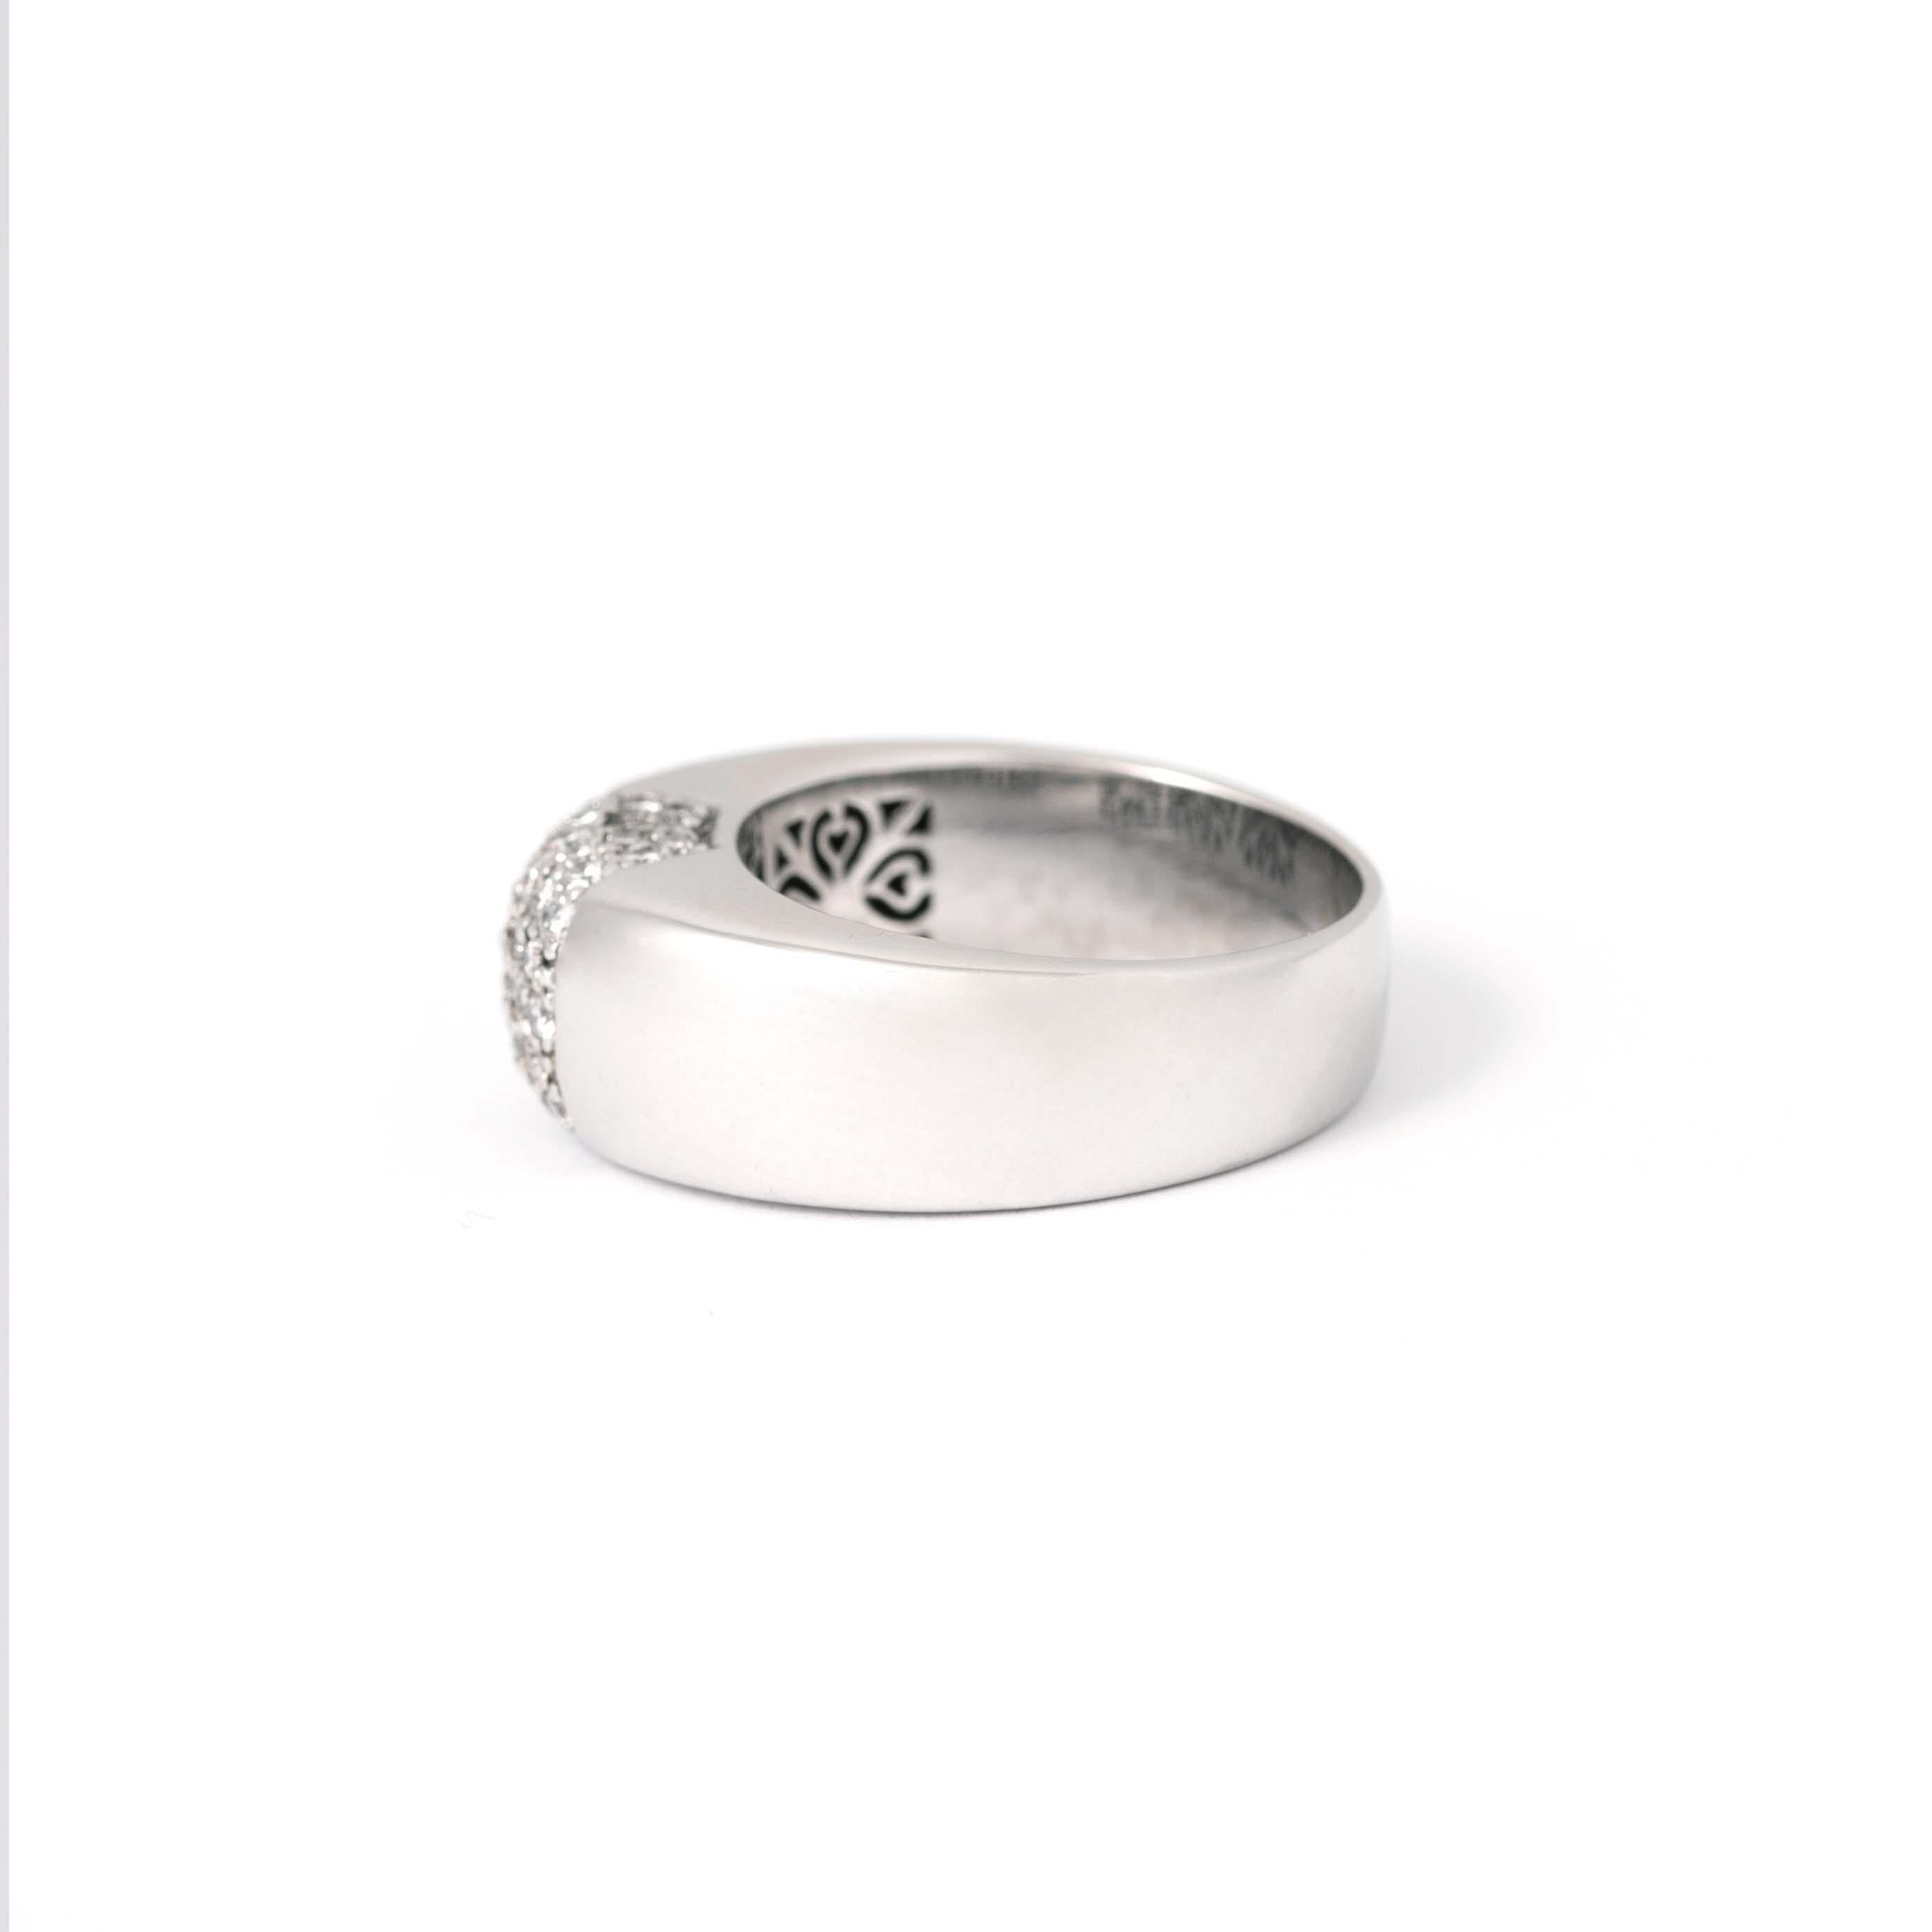 Diamant 18K Weißer Ring.
Bruttogewicht: 9,34 Gramm.